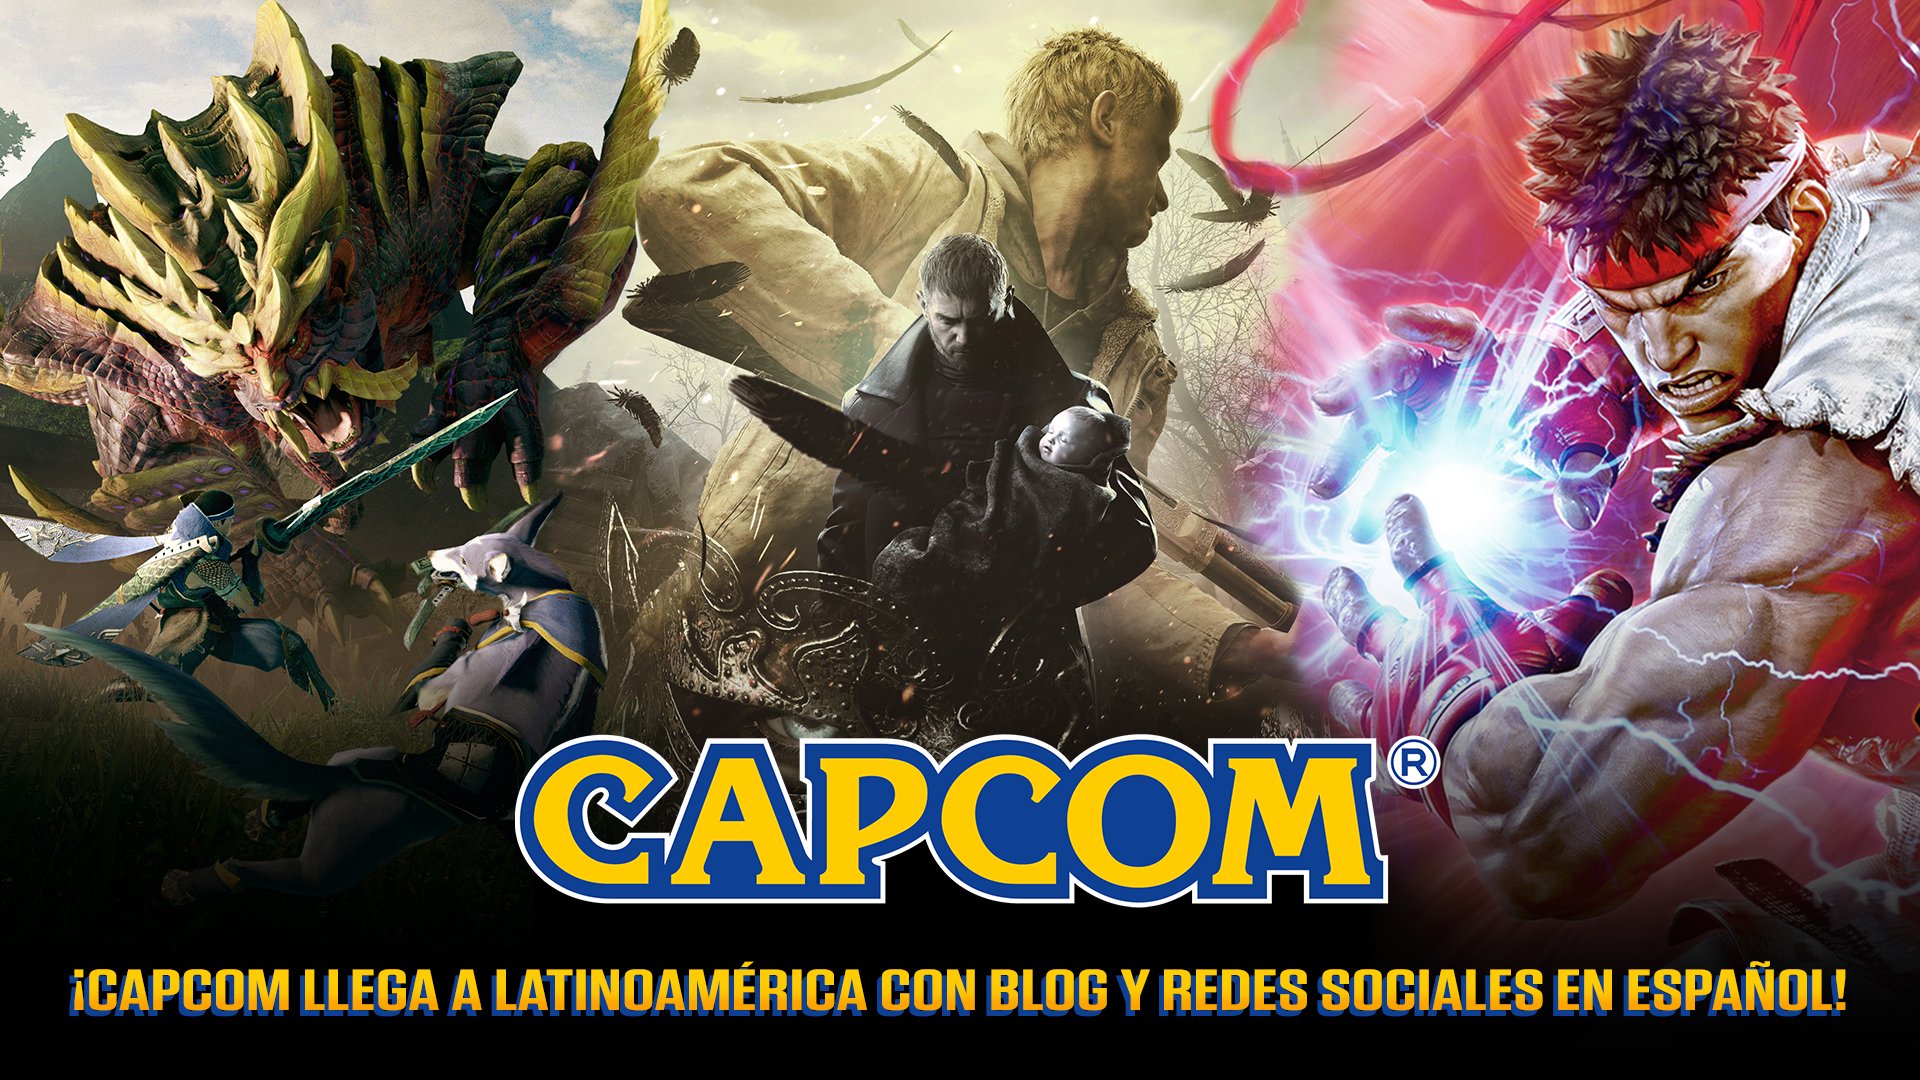 Capcom Latinoamérica